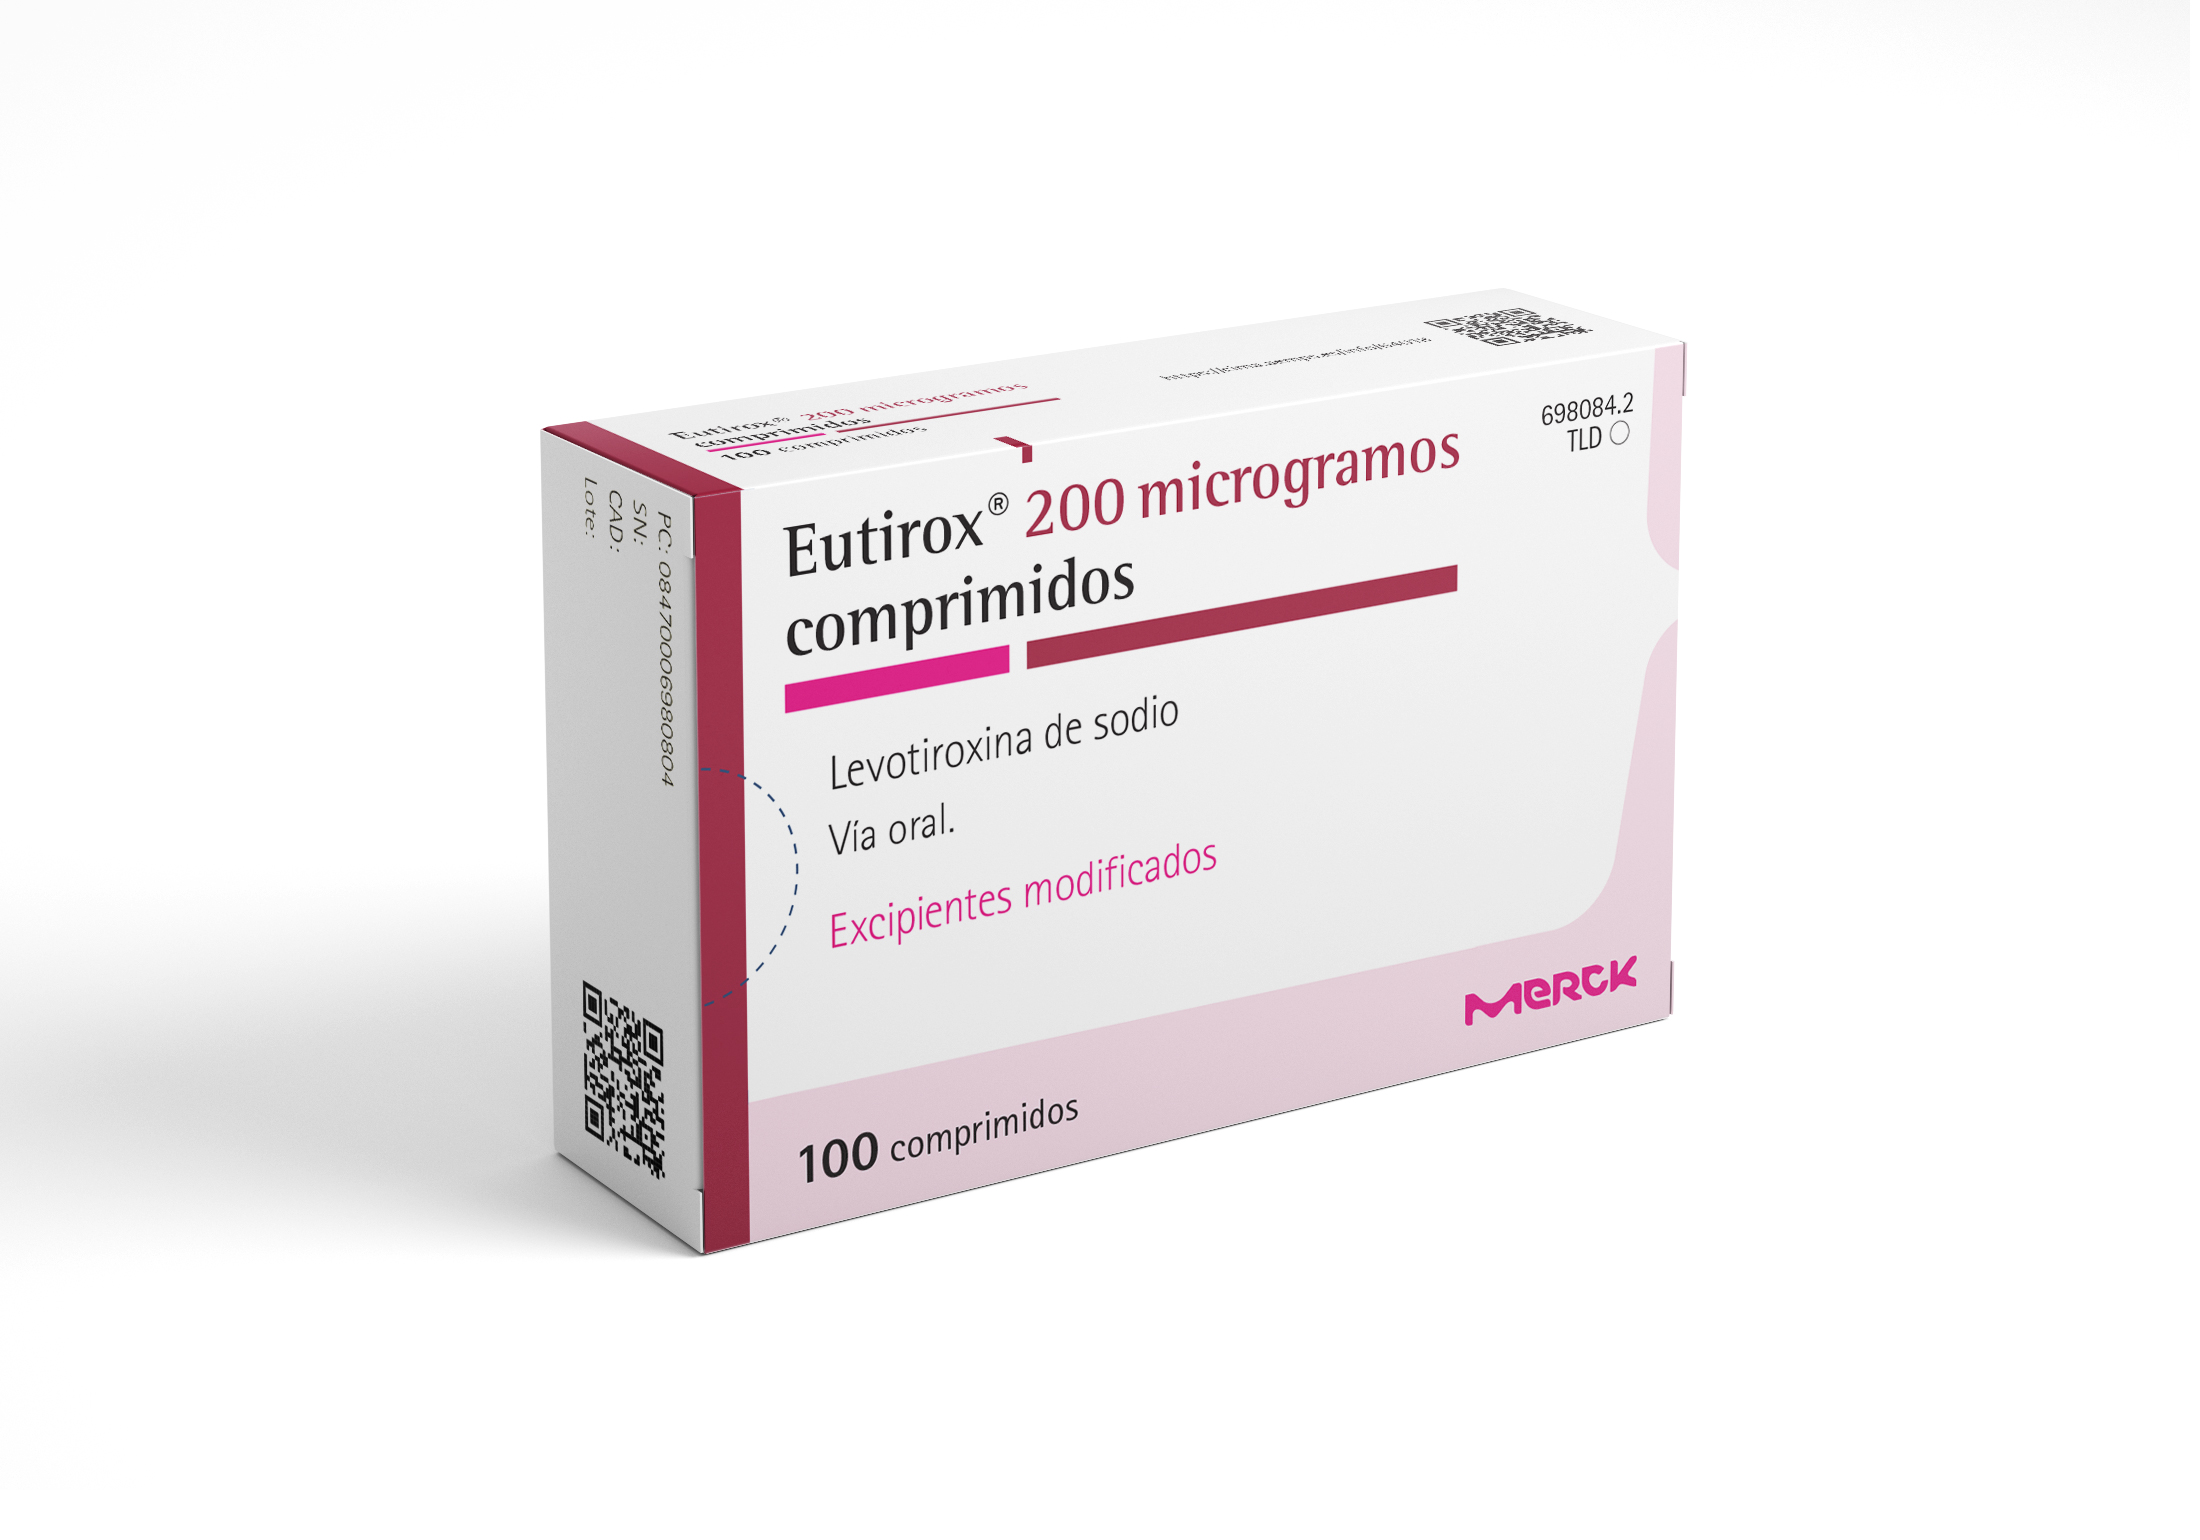 EUTIROX 200 microgramos 100 COMPRIMIDOS